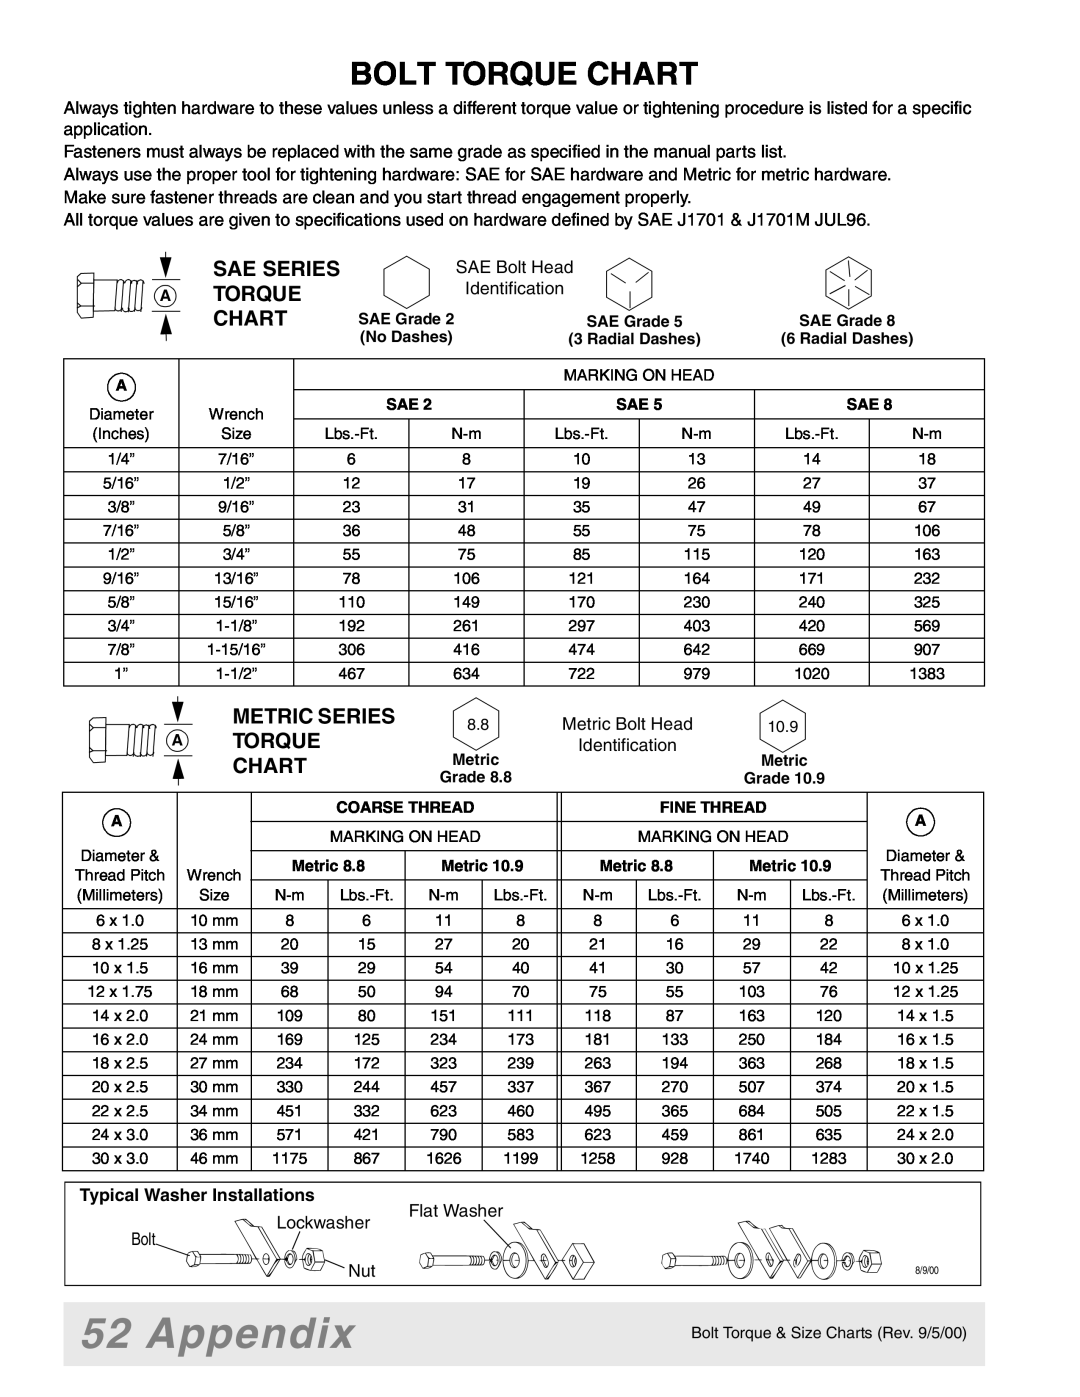 Woods Equipment 7000, 7192, 7194, 7195, 7200, 7205 Appendix, Bolt Torque Chart, Sae Series A Torque Chart, Metric Series 